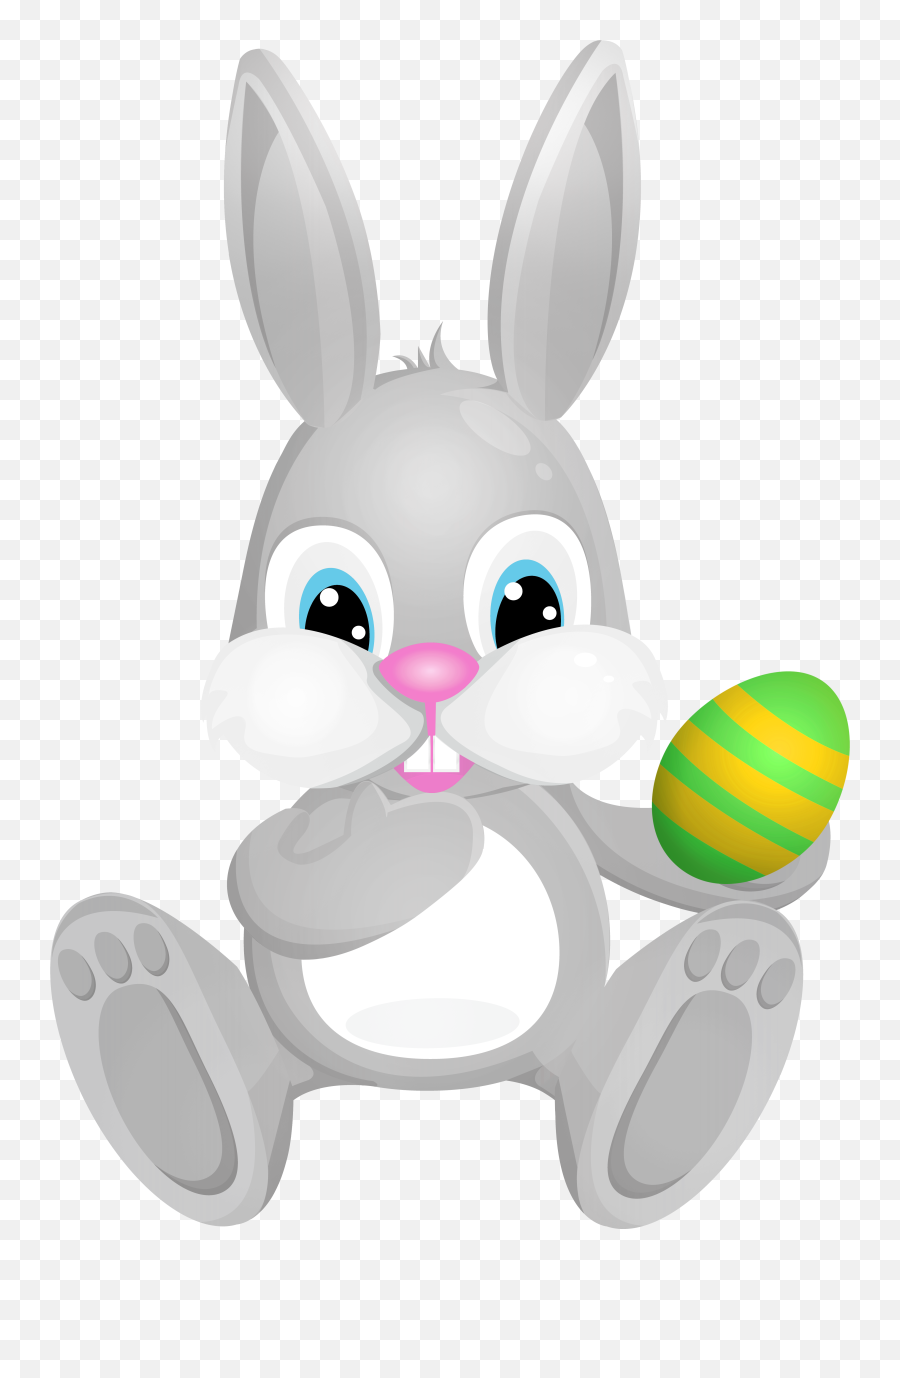 Clipart Rabbit Grey Rabbit Clipart Rabbit Grey Rabbit - Grey Bunny Clip Art Free Emoji,Rabbit Png